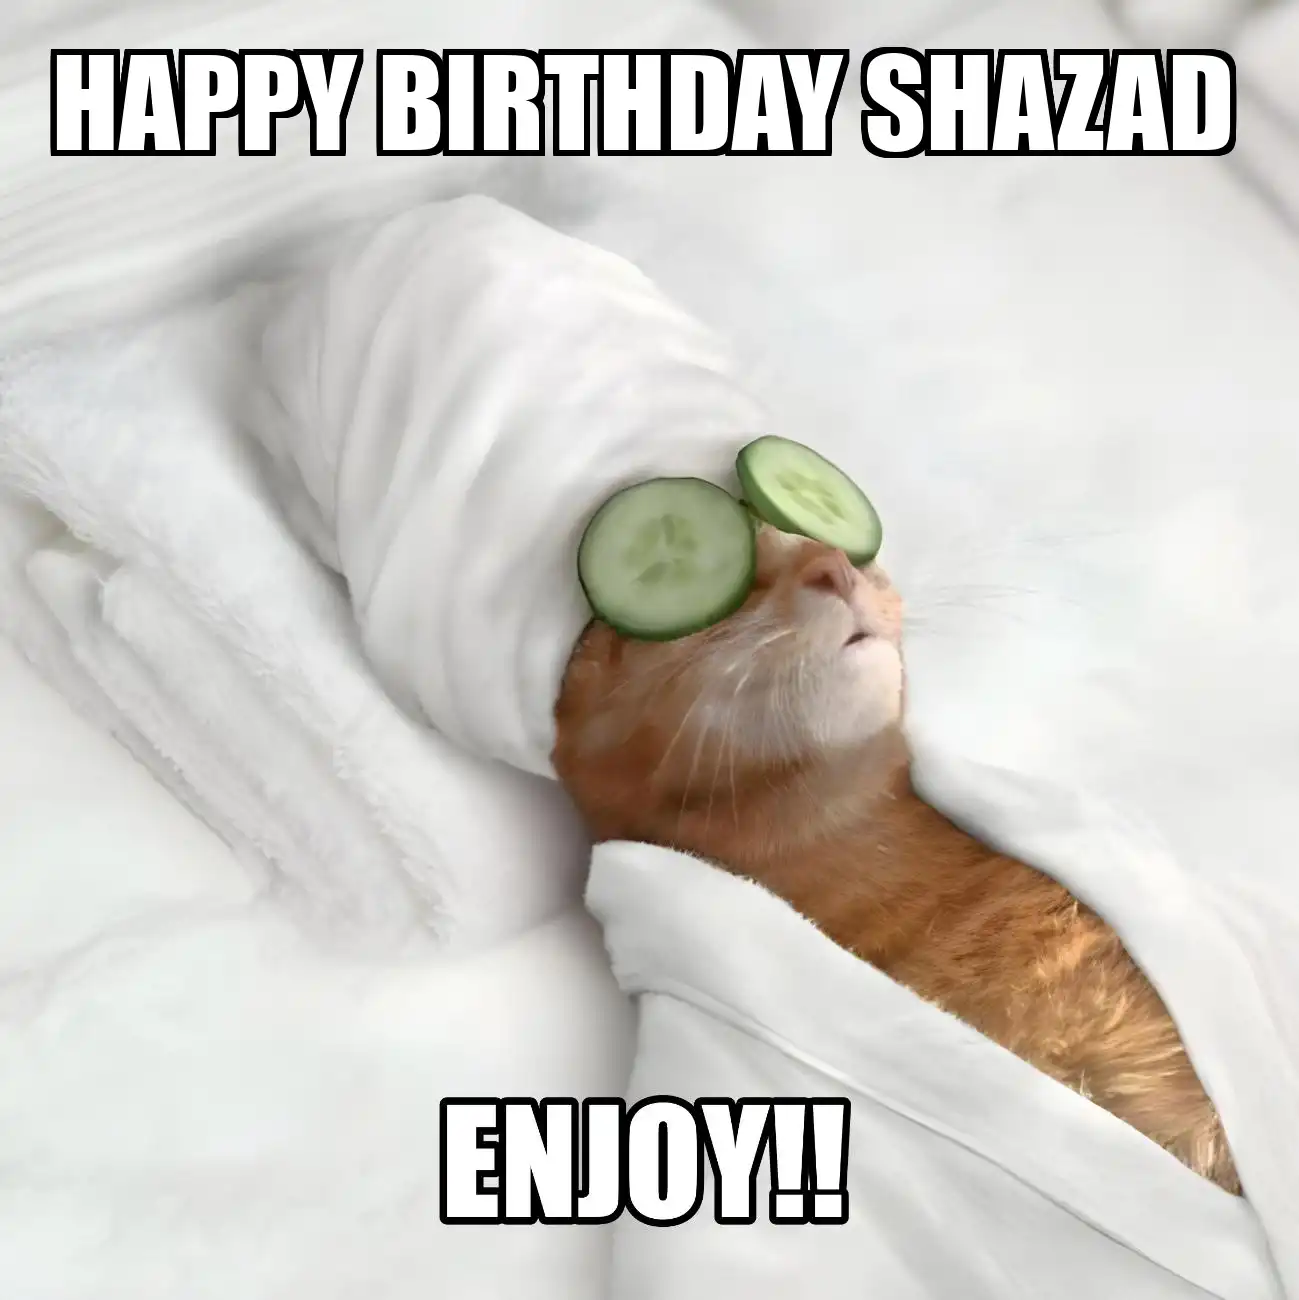 Happy Birthday Shazad Enjoy Cat Meme